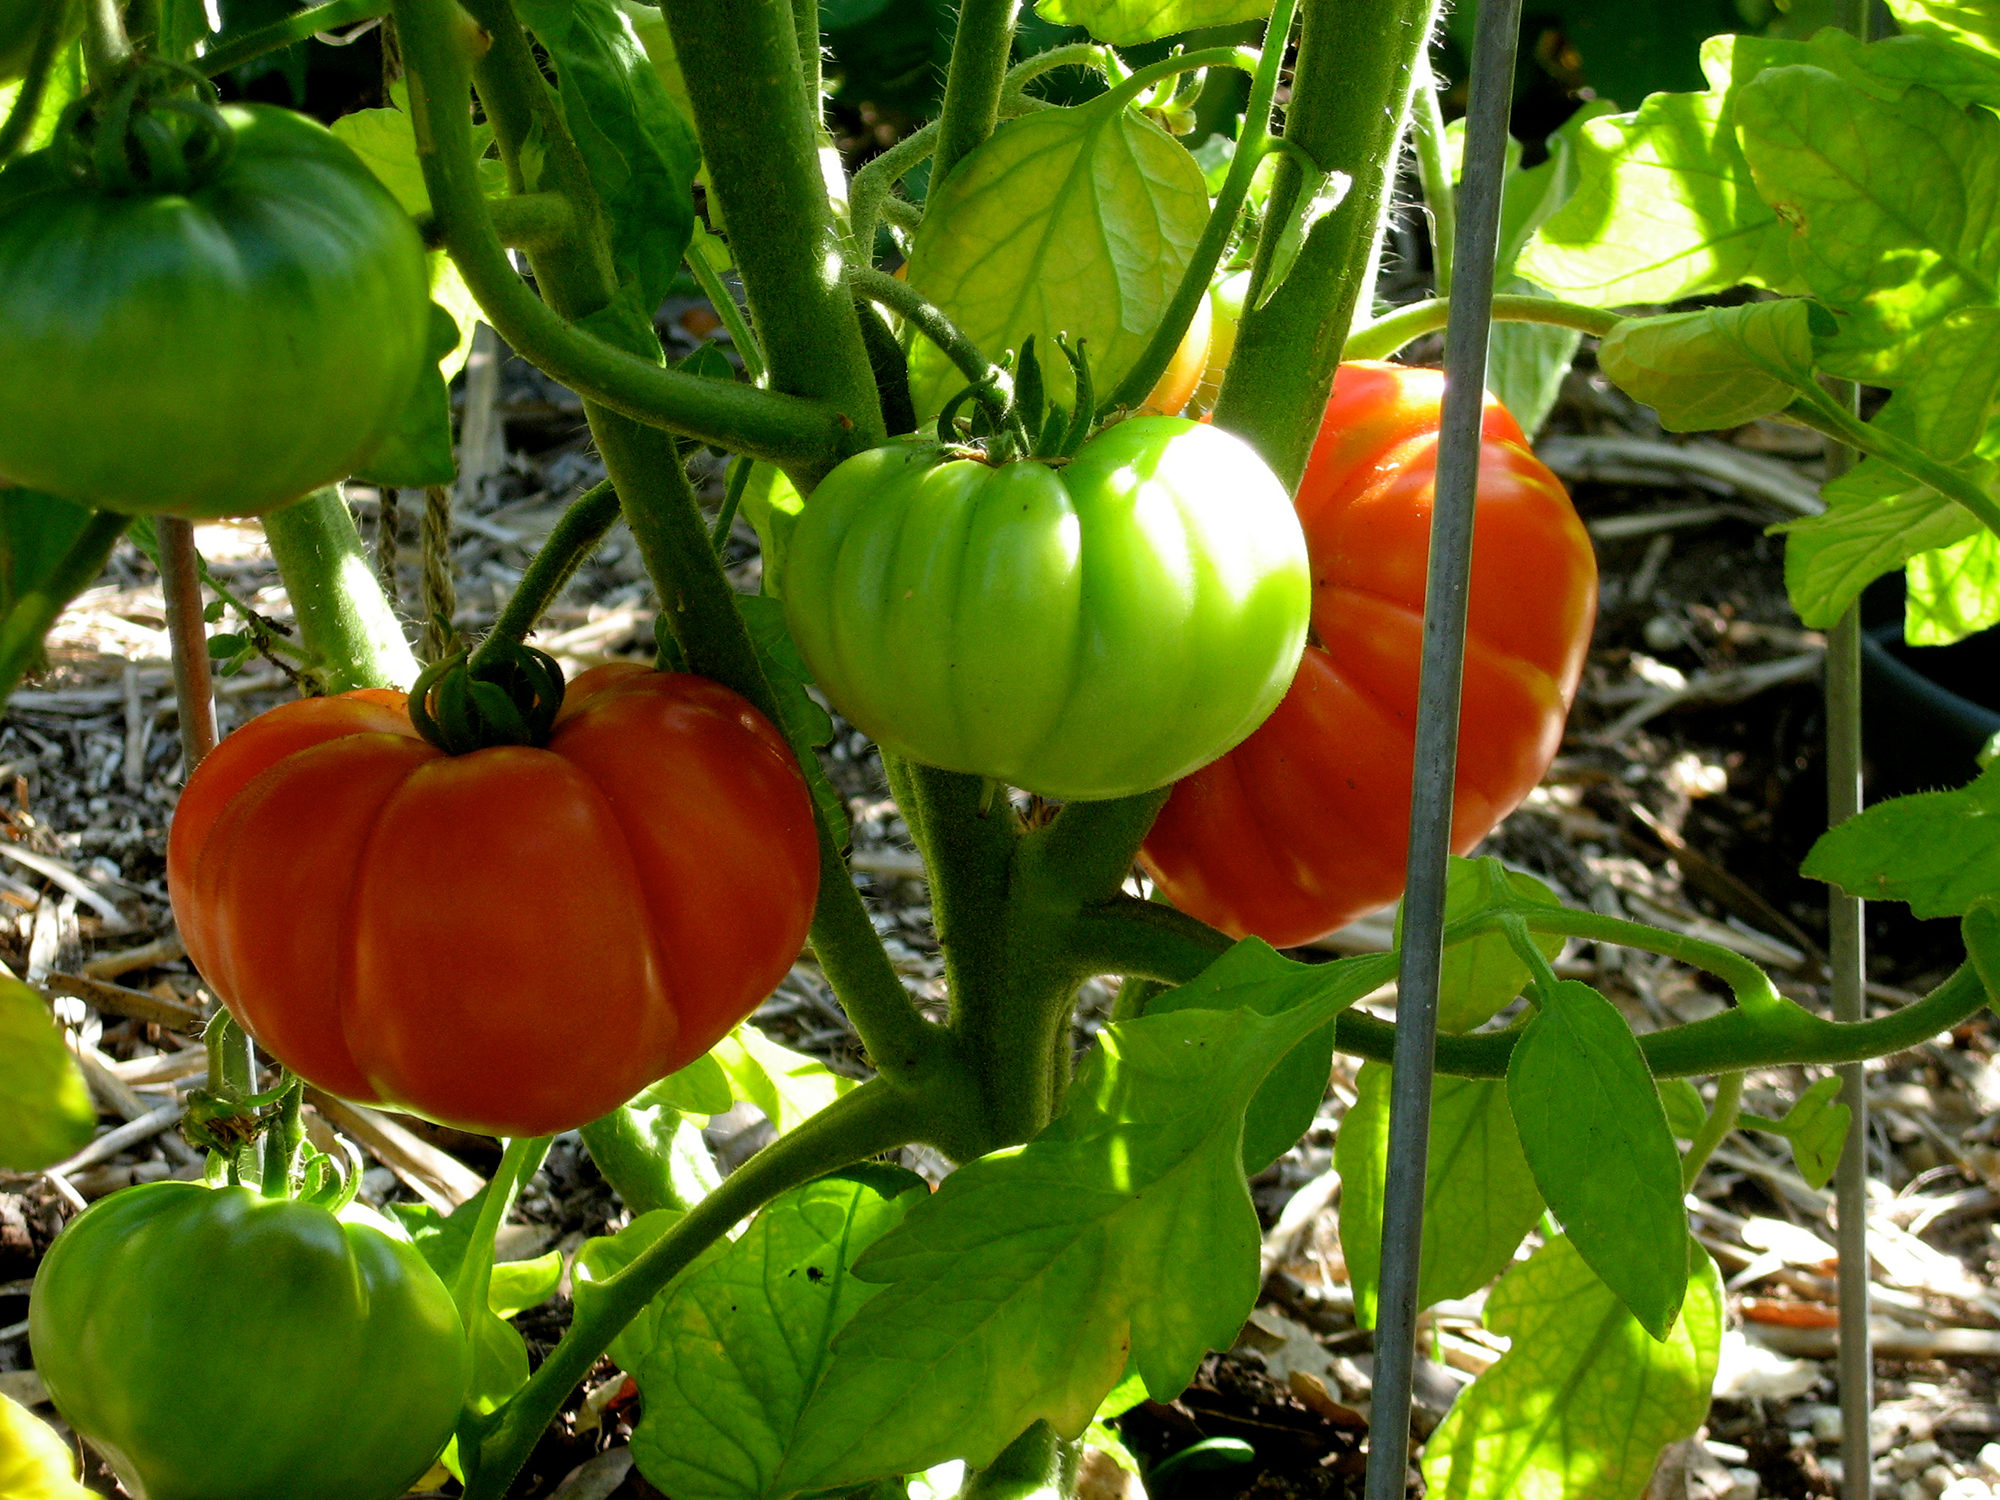 Costaluto Genovese tomato - Photo by Helen Krayenhoff